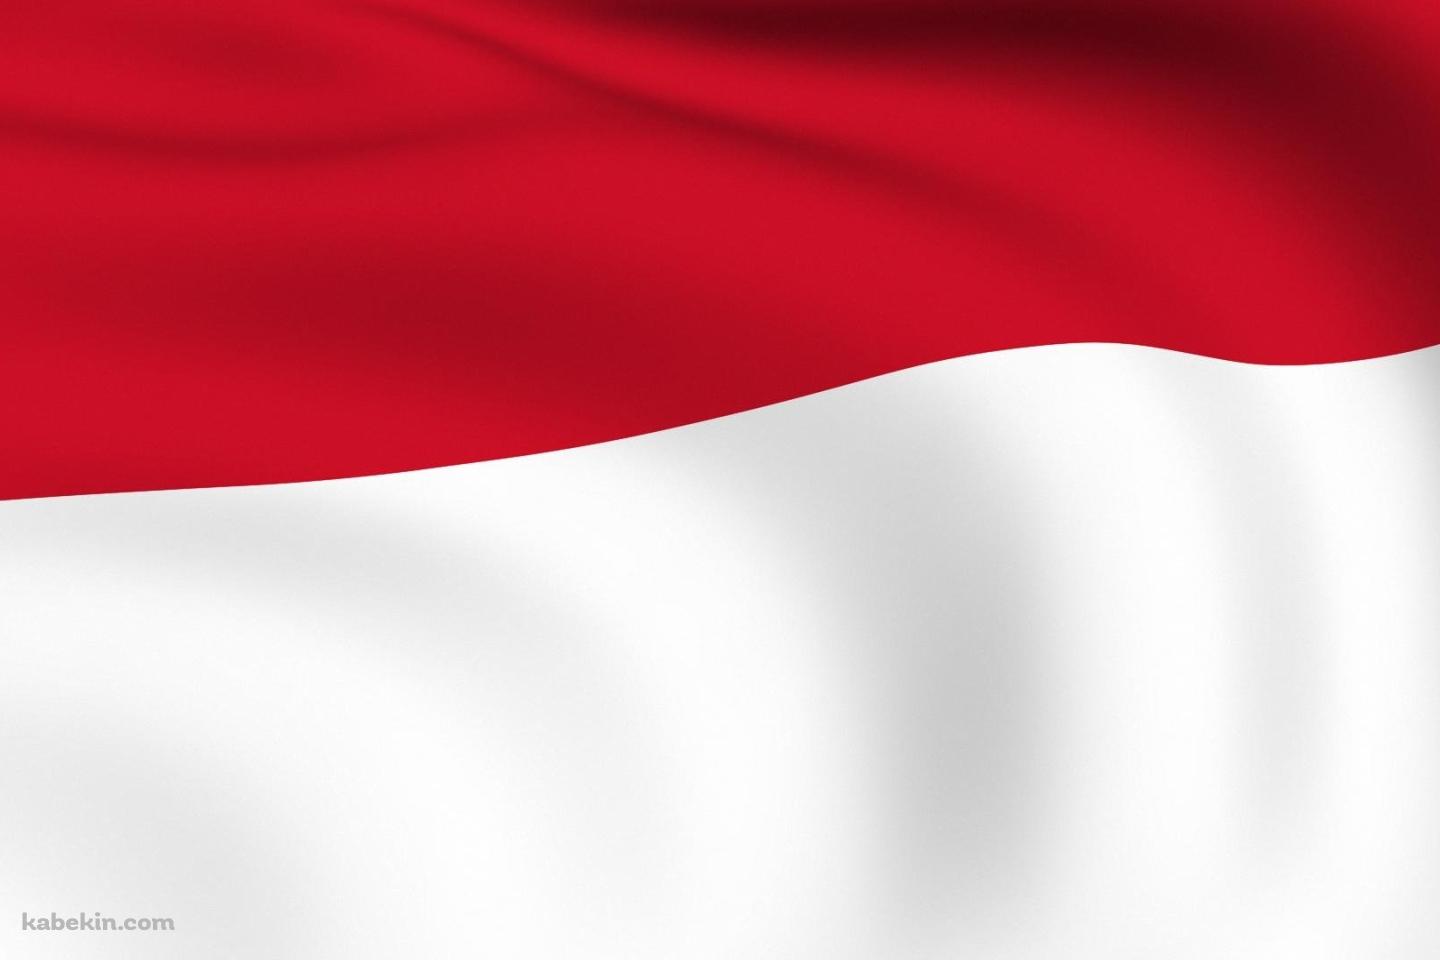 インドネシアの国旗の壁紙(1440px x 960px) 高画質 PC・デスクトップ用